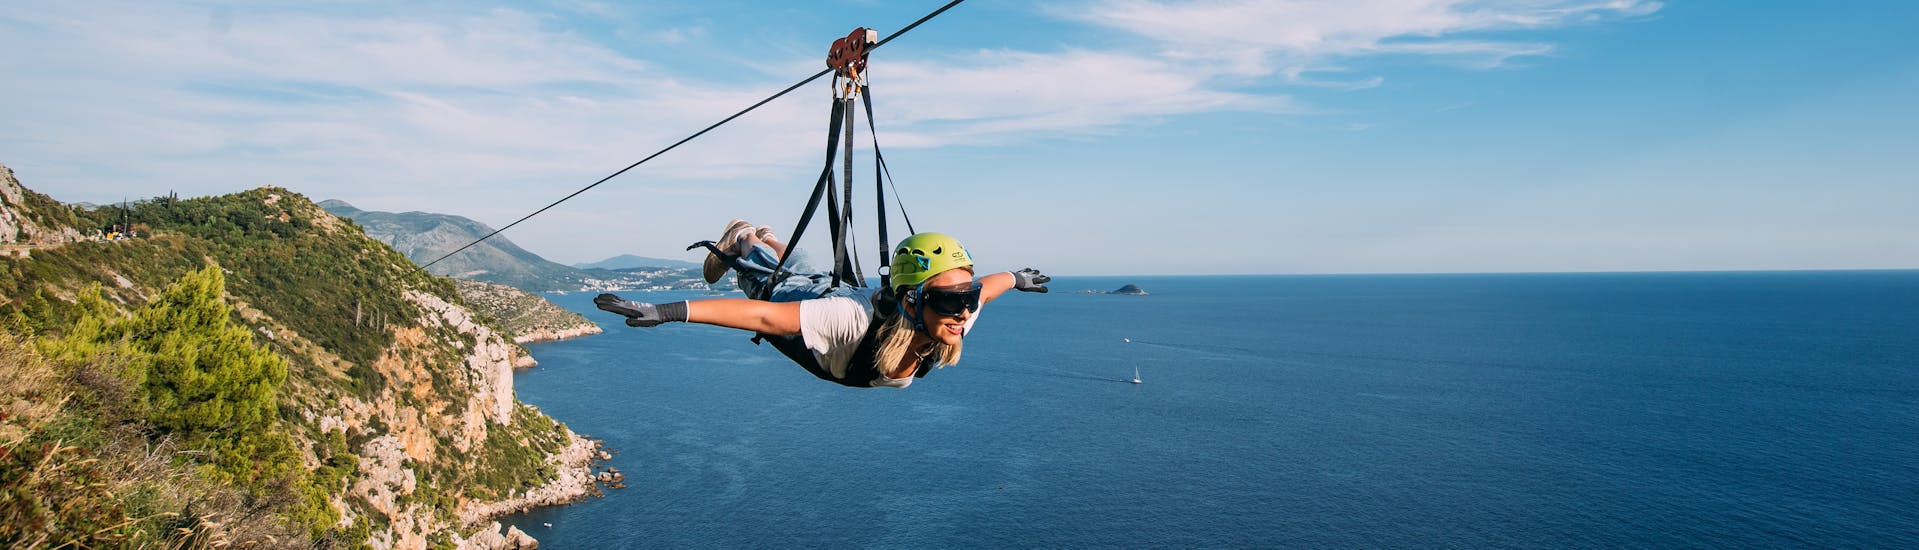 Een Persoon aan een Zipline in Superman Positie Zipline nabij Dubrovnik.